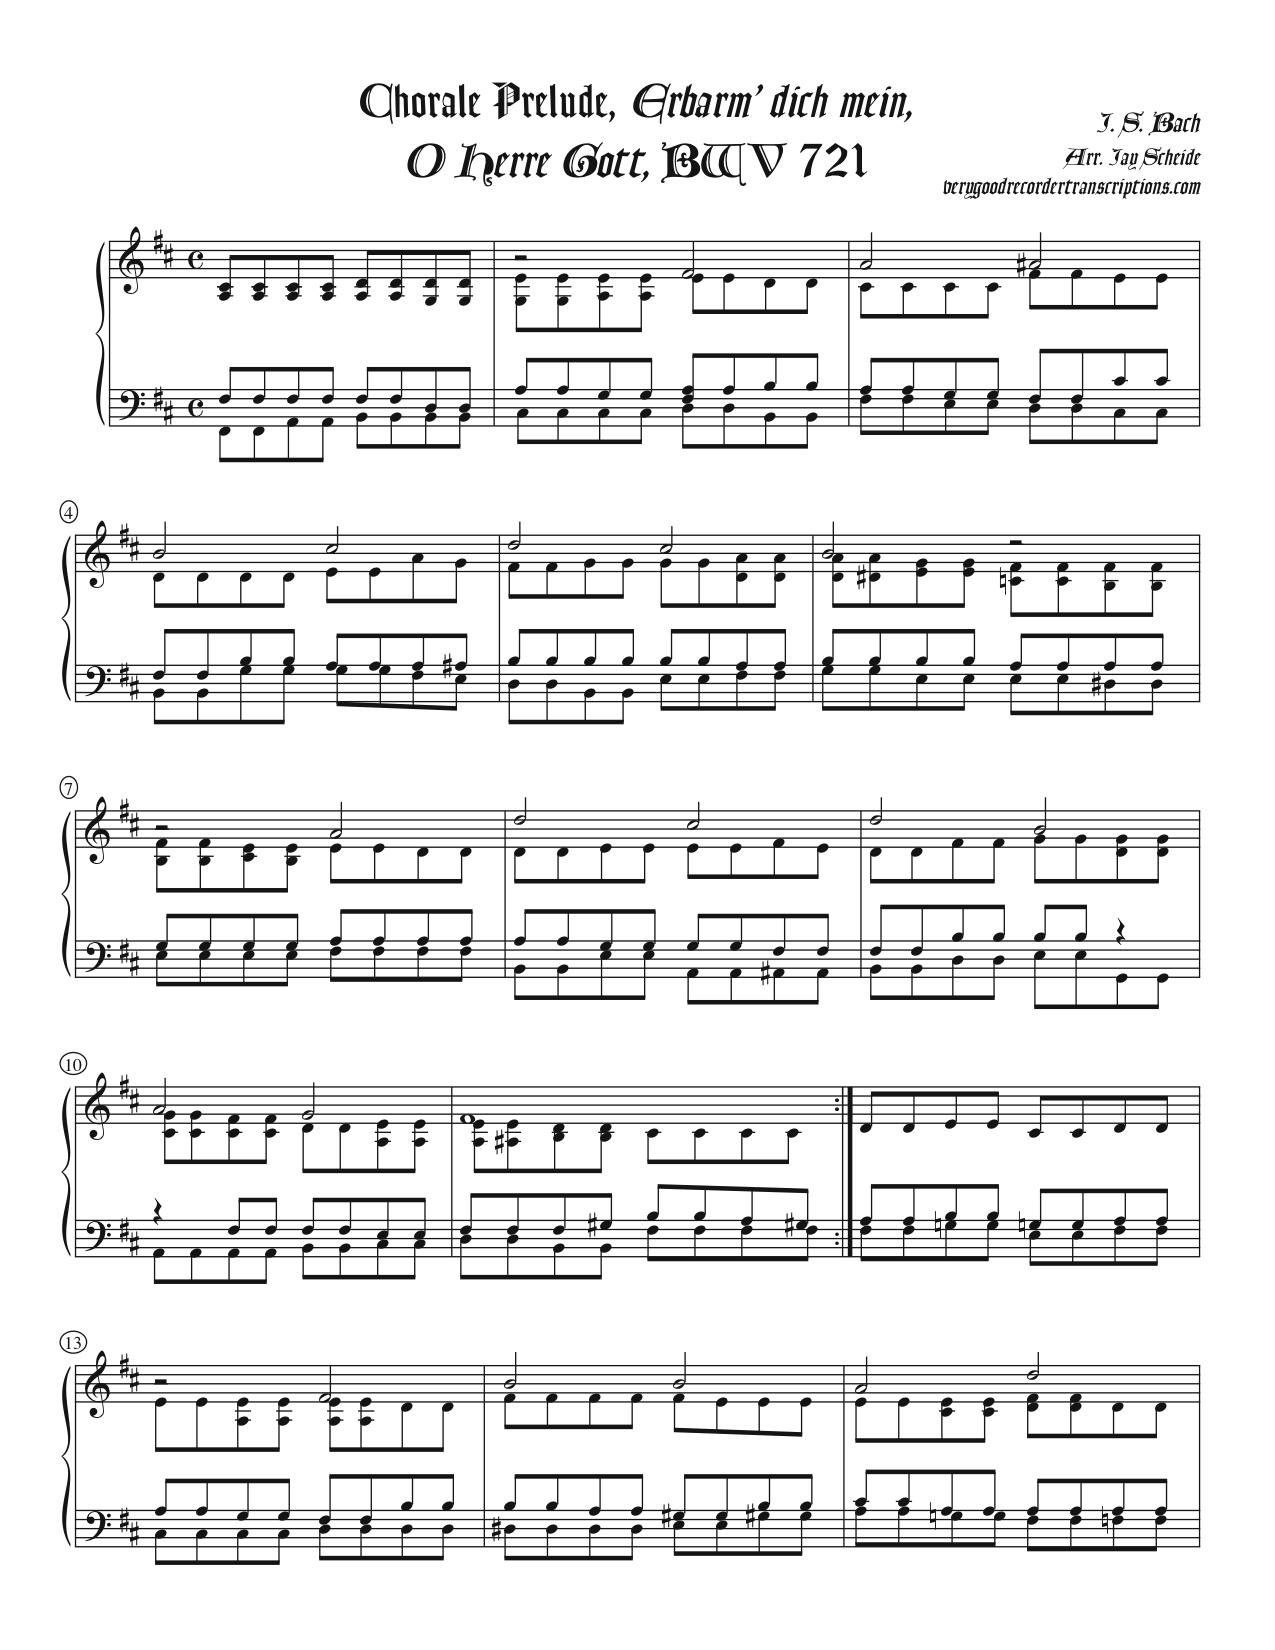 Chorale Prelude, *Erbarm’ dich mein, O Herre Gott*, BWV 721